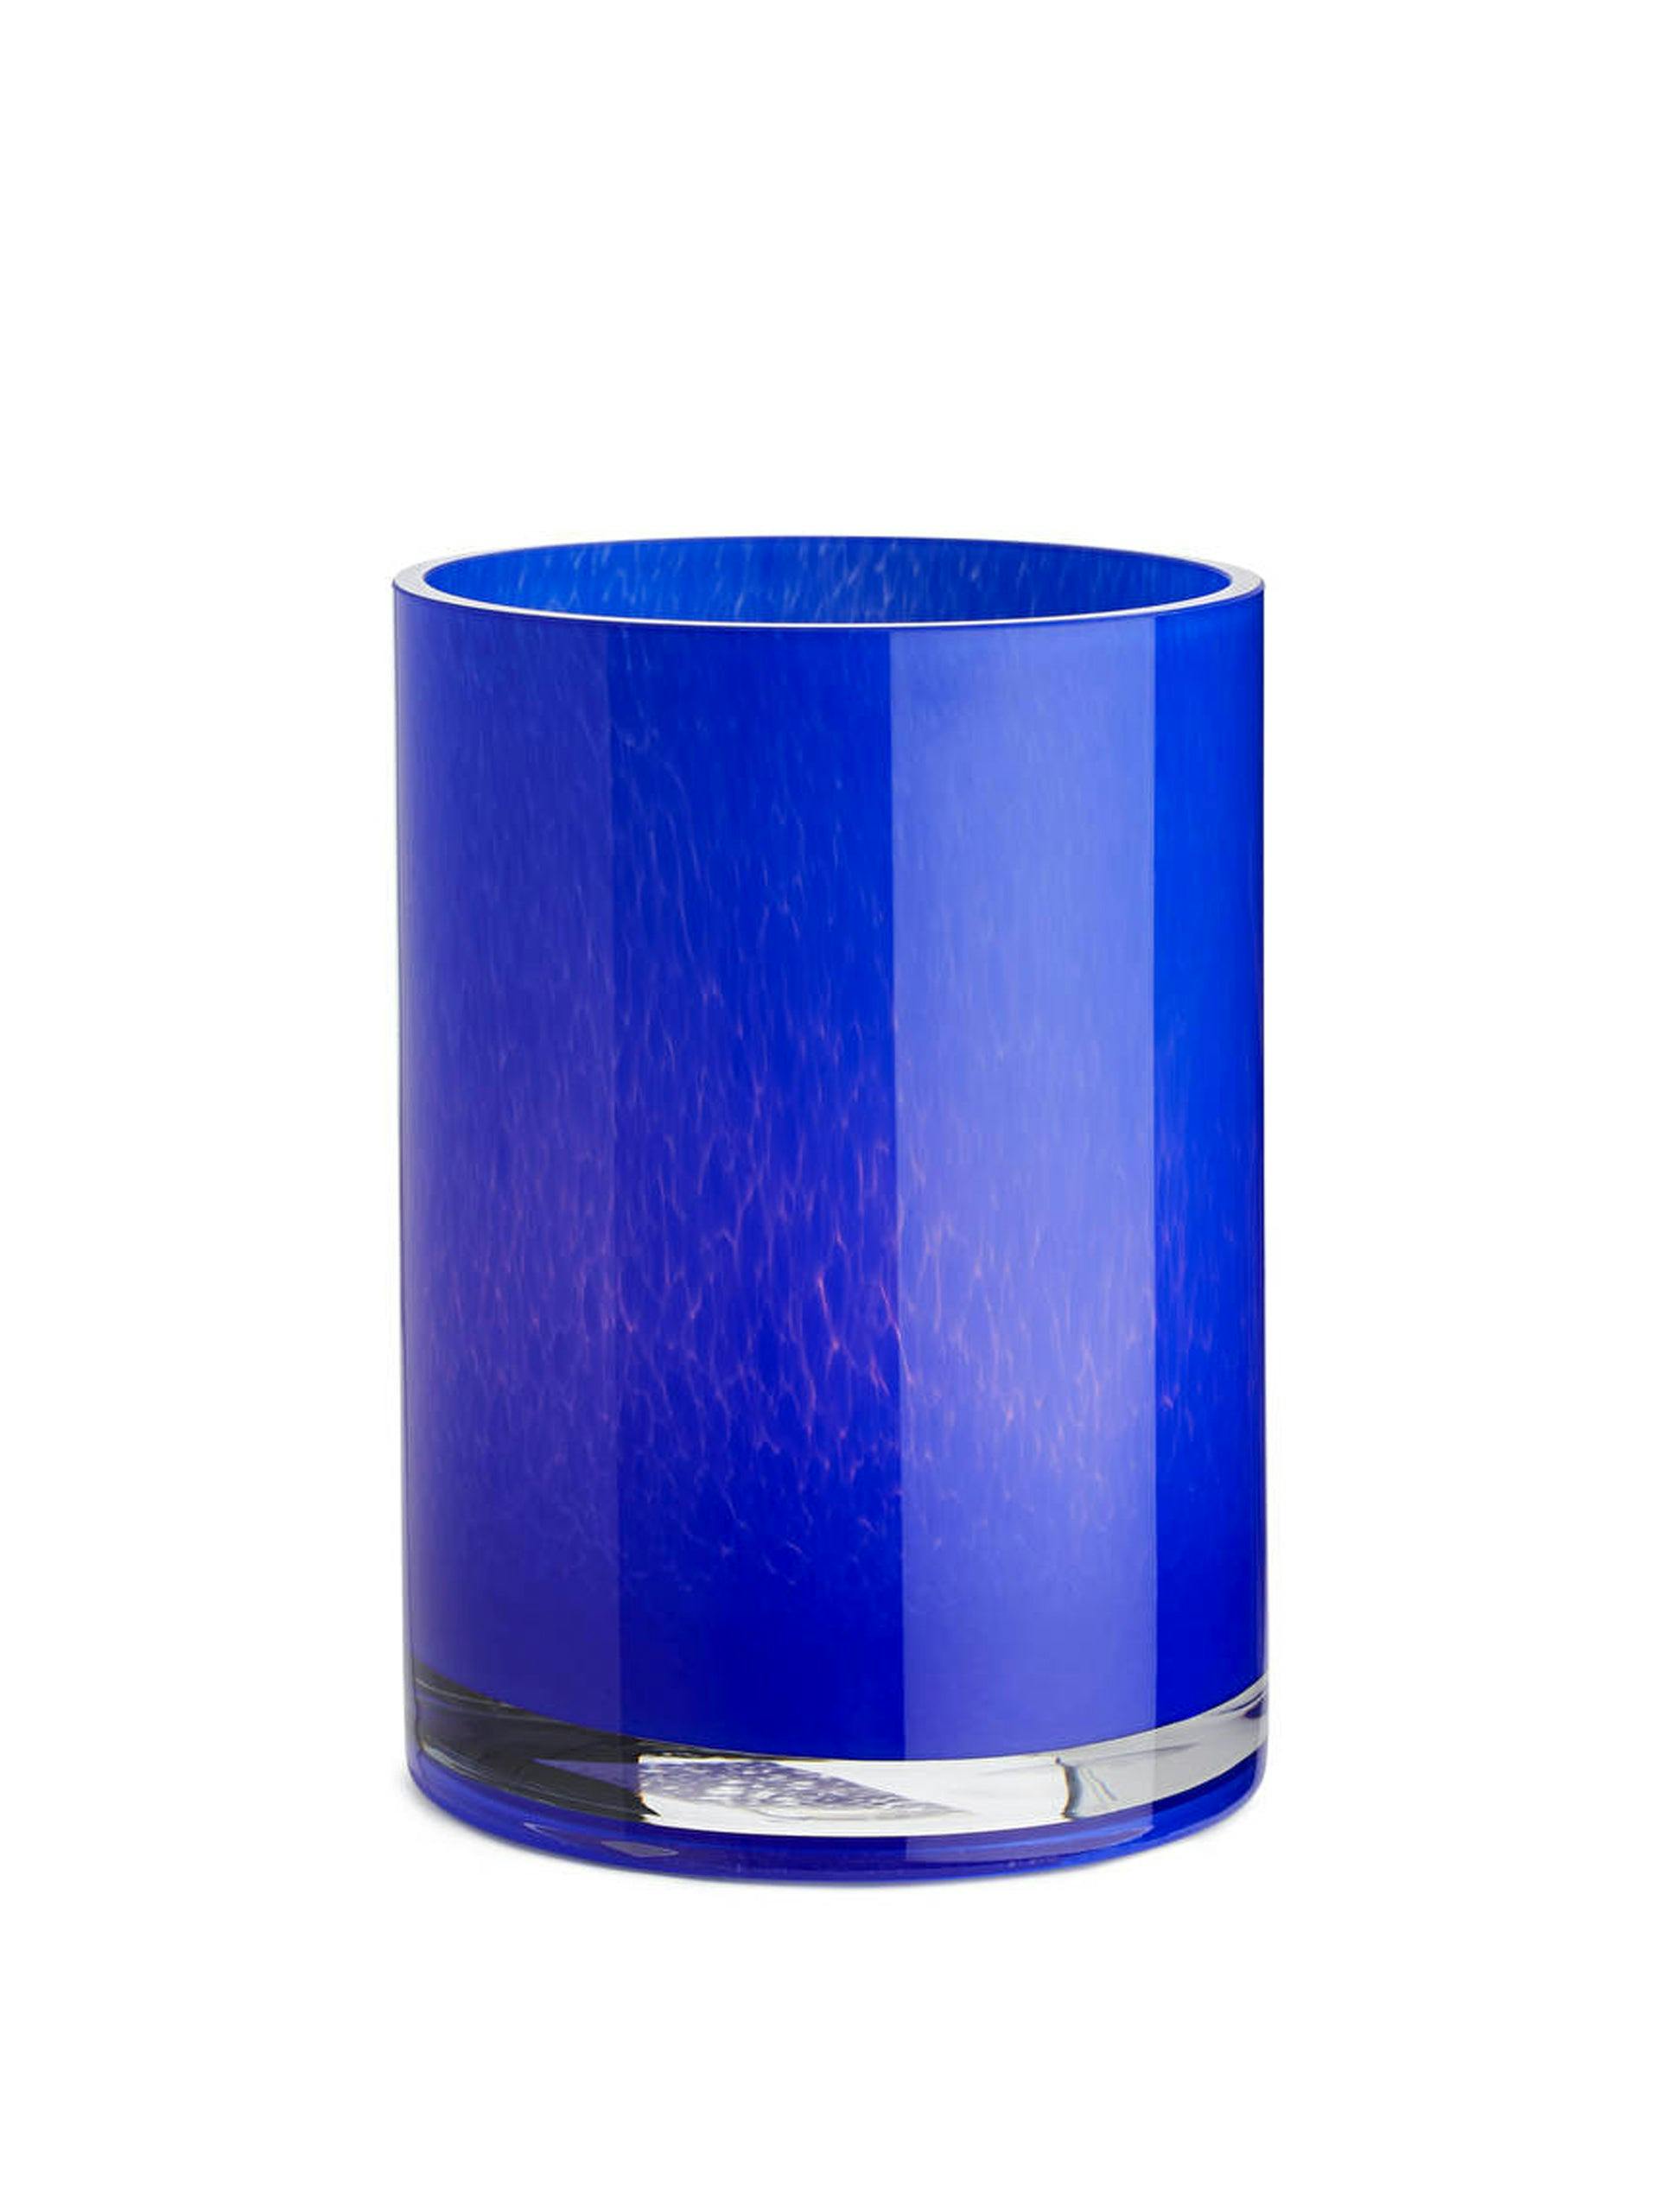 Blue glass tea light holder